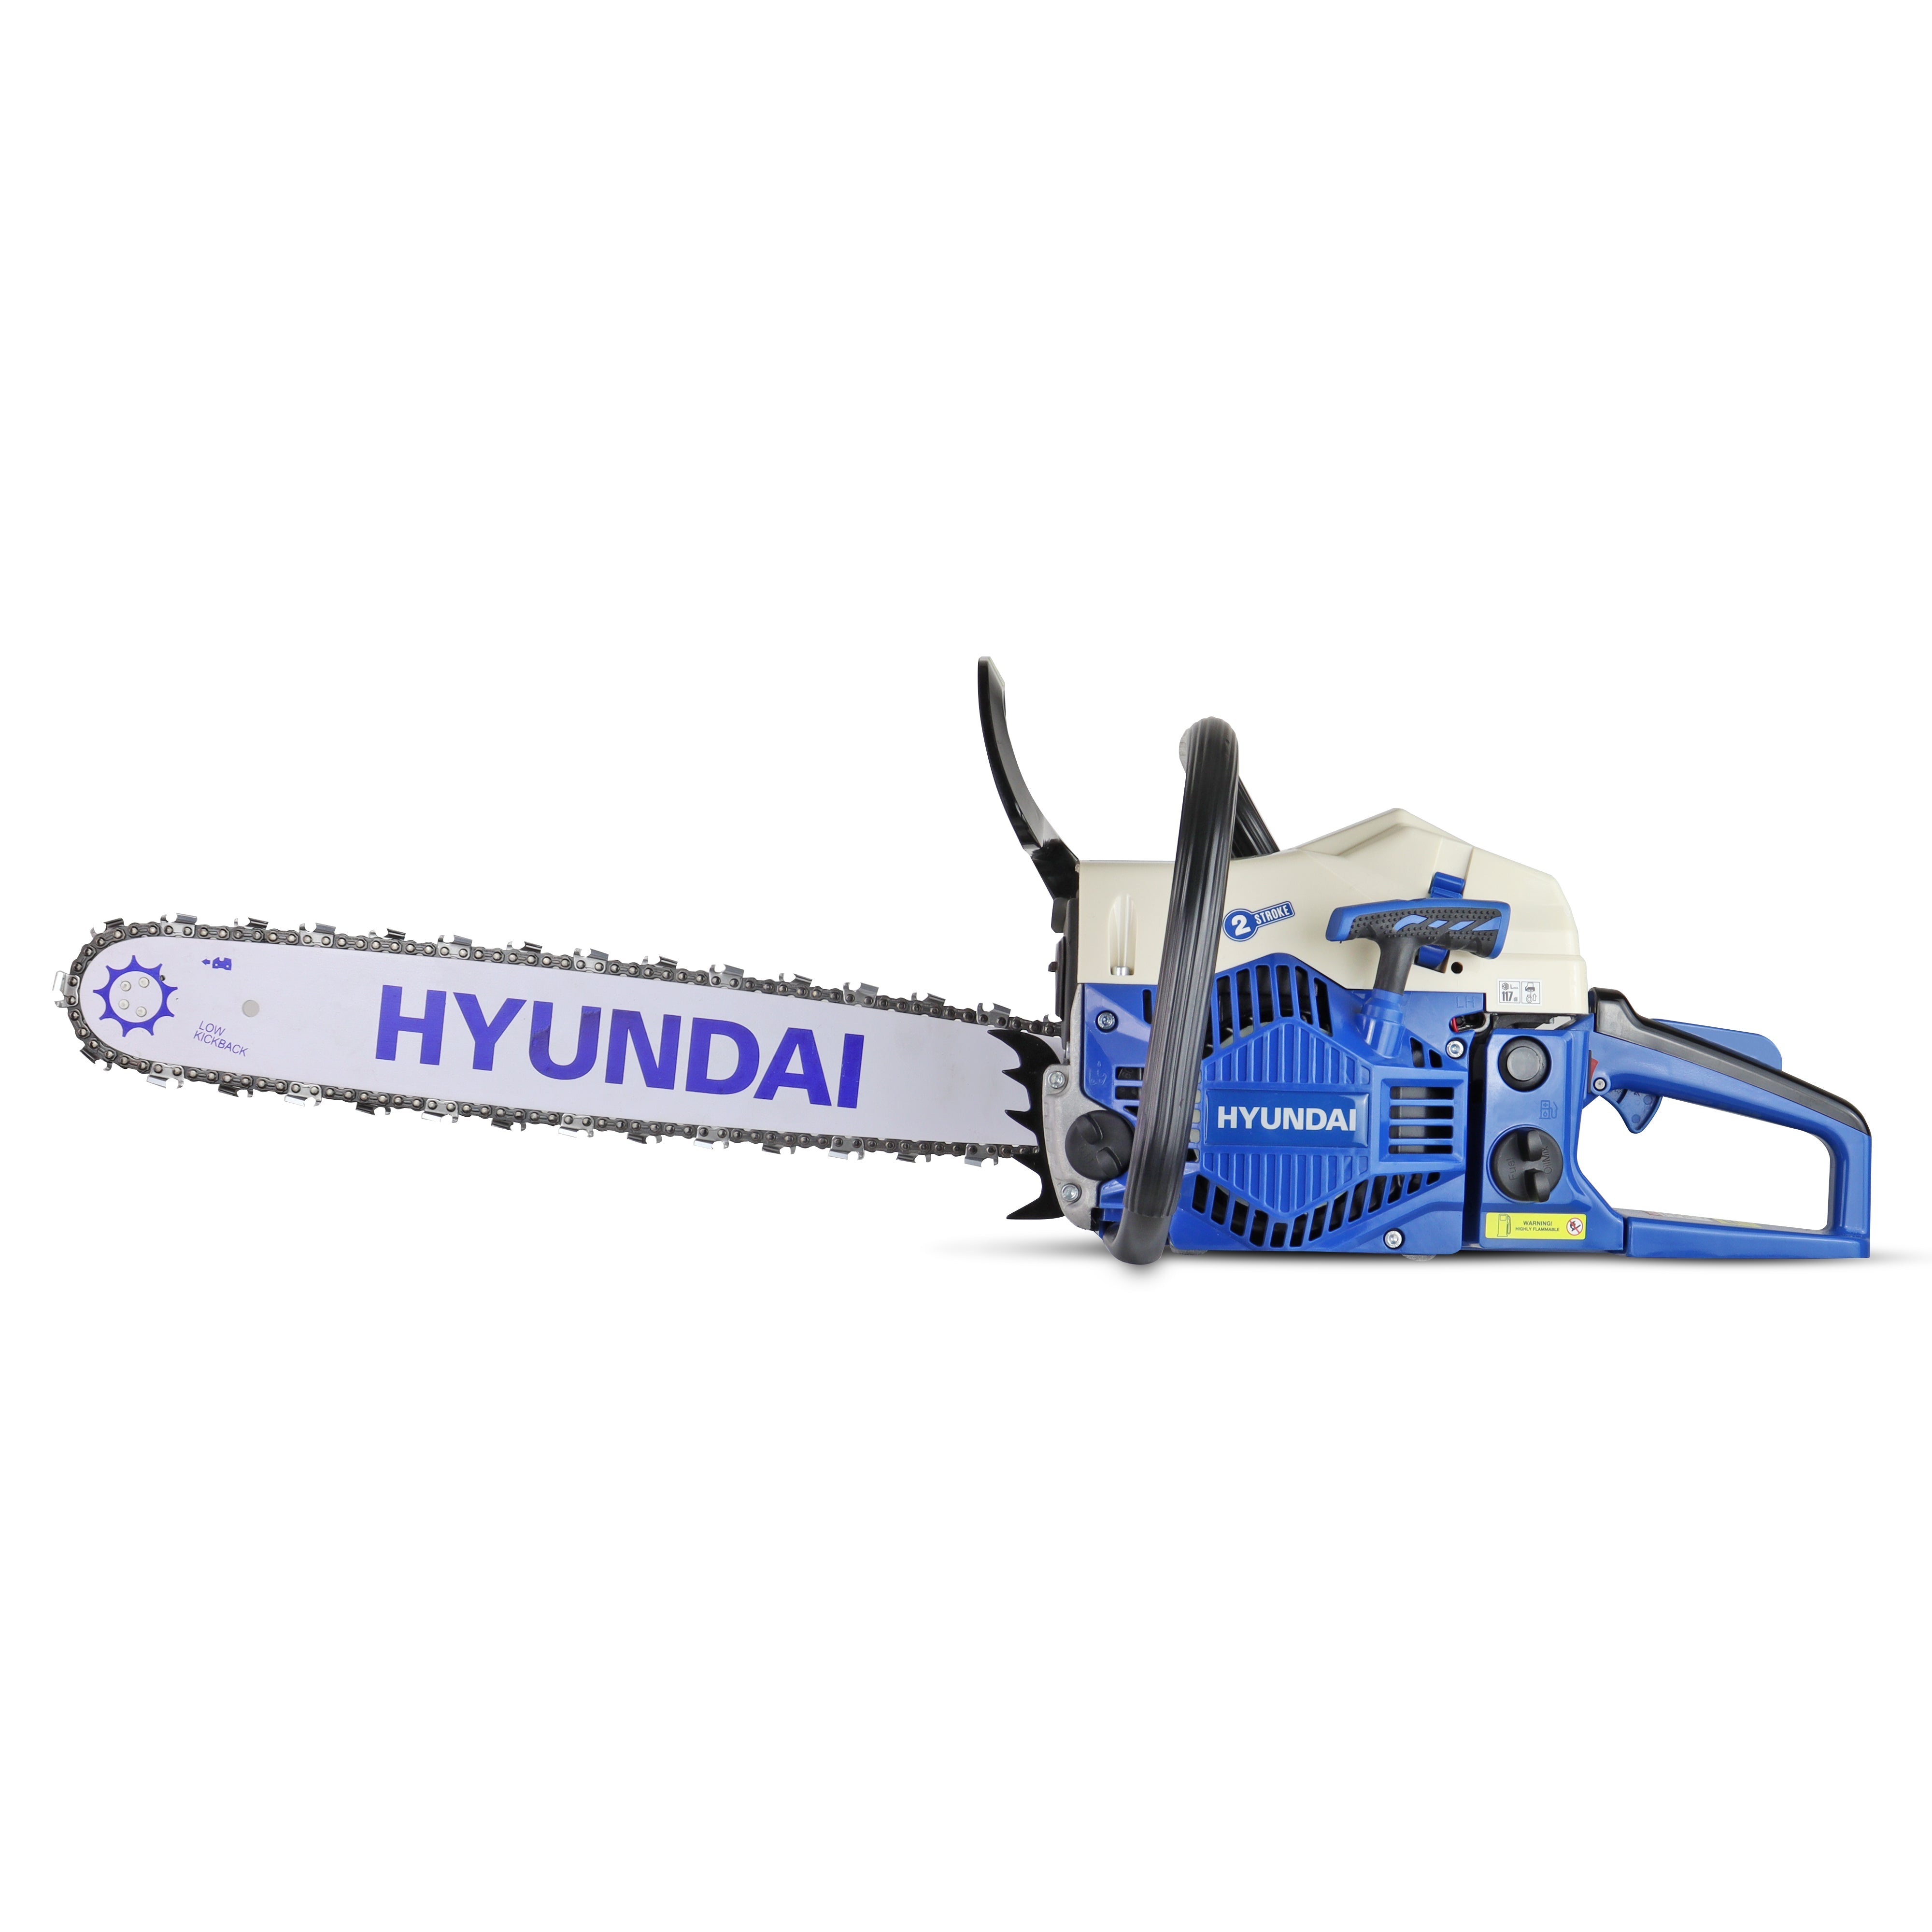 Hyundai 62cc 20” Petrol Chainsaw, 2-Stroke Easy-Start | HYC6200X